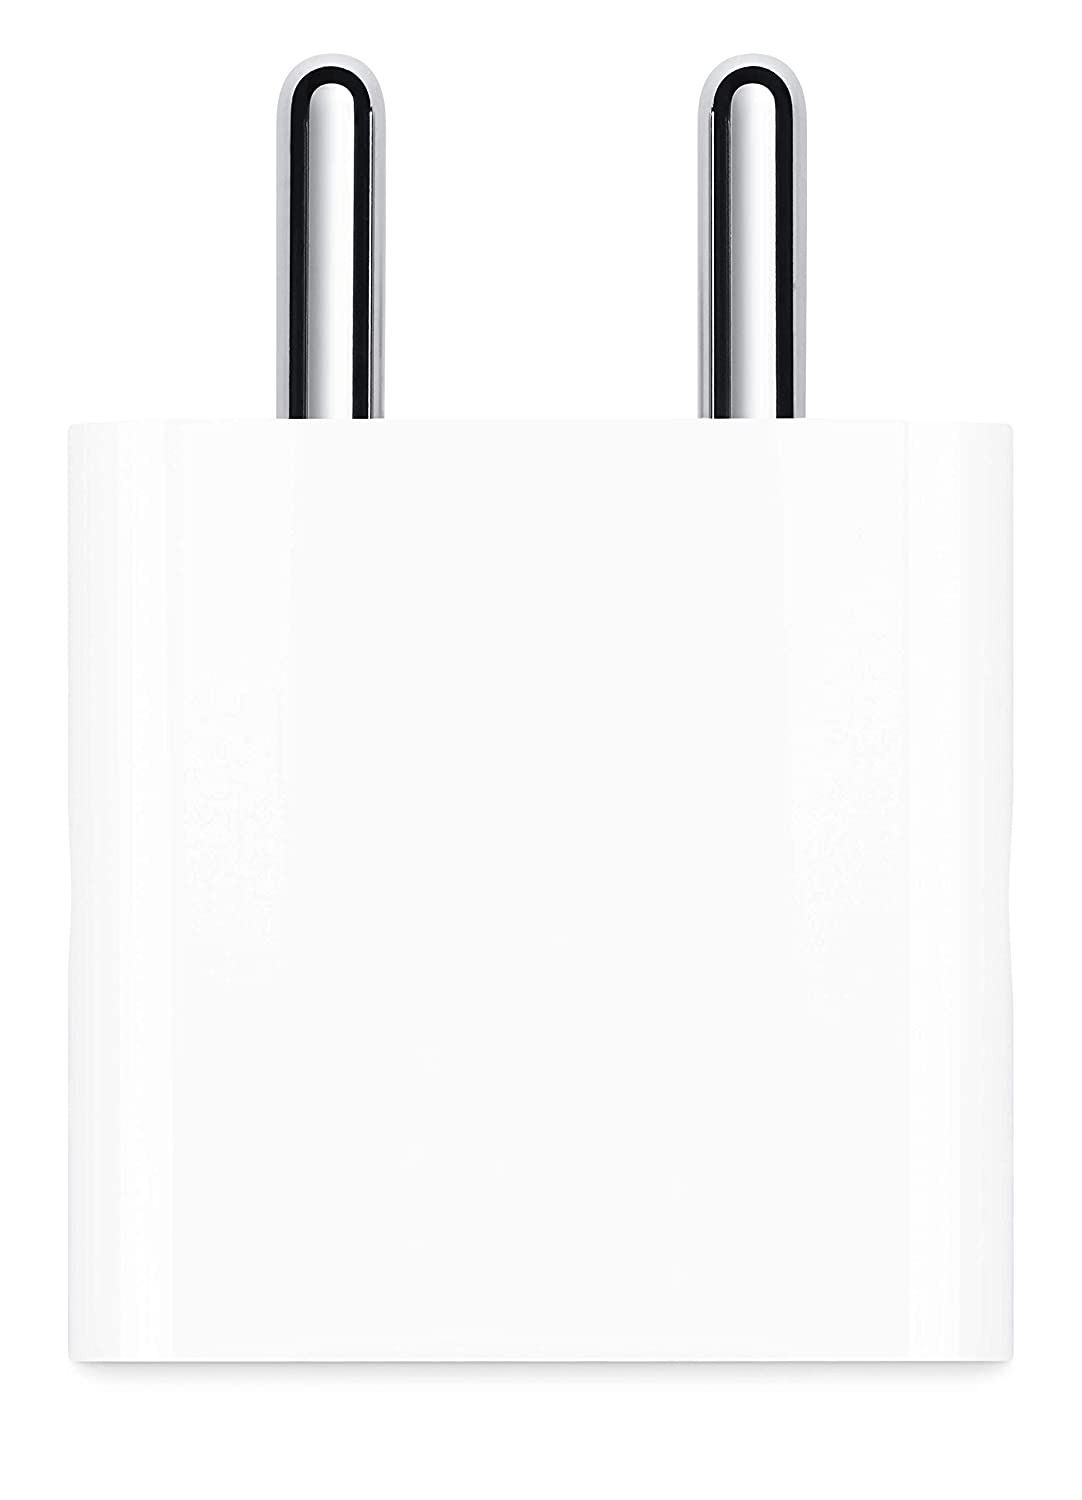 ओपन बॉक्स, iPhone iPad और AirPods के लिए अप्रयुक्त Apple 20W USB C पावर एडाप्टर